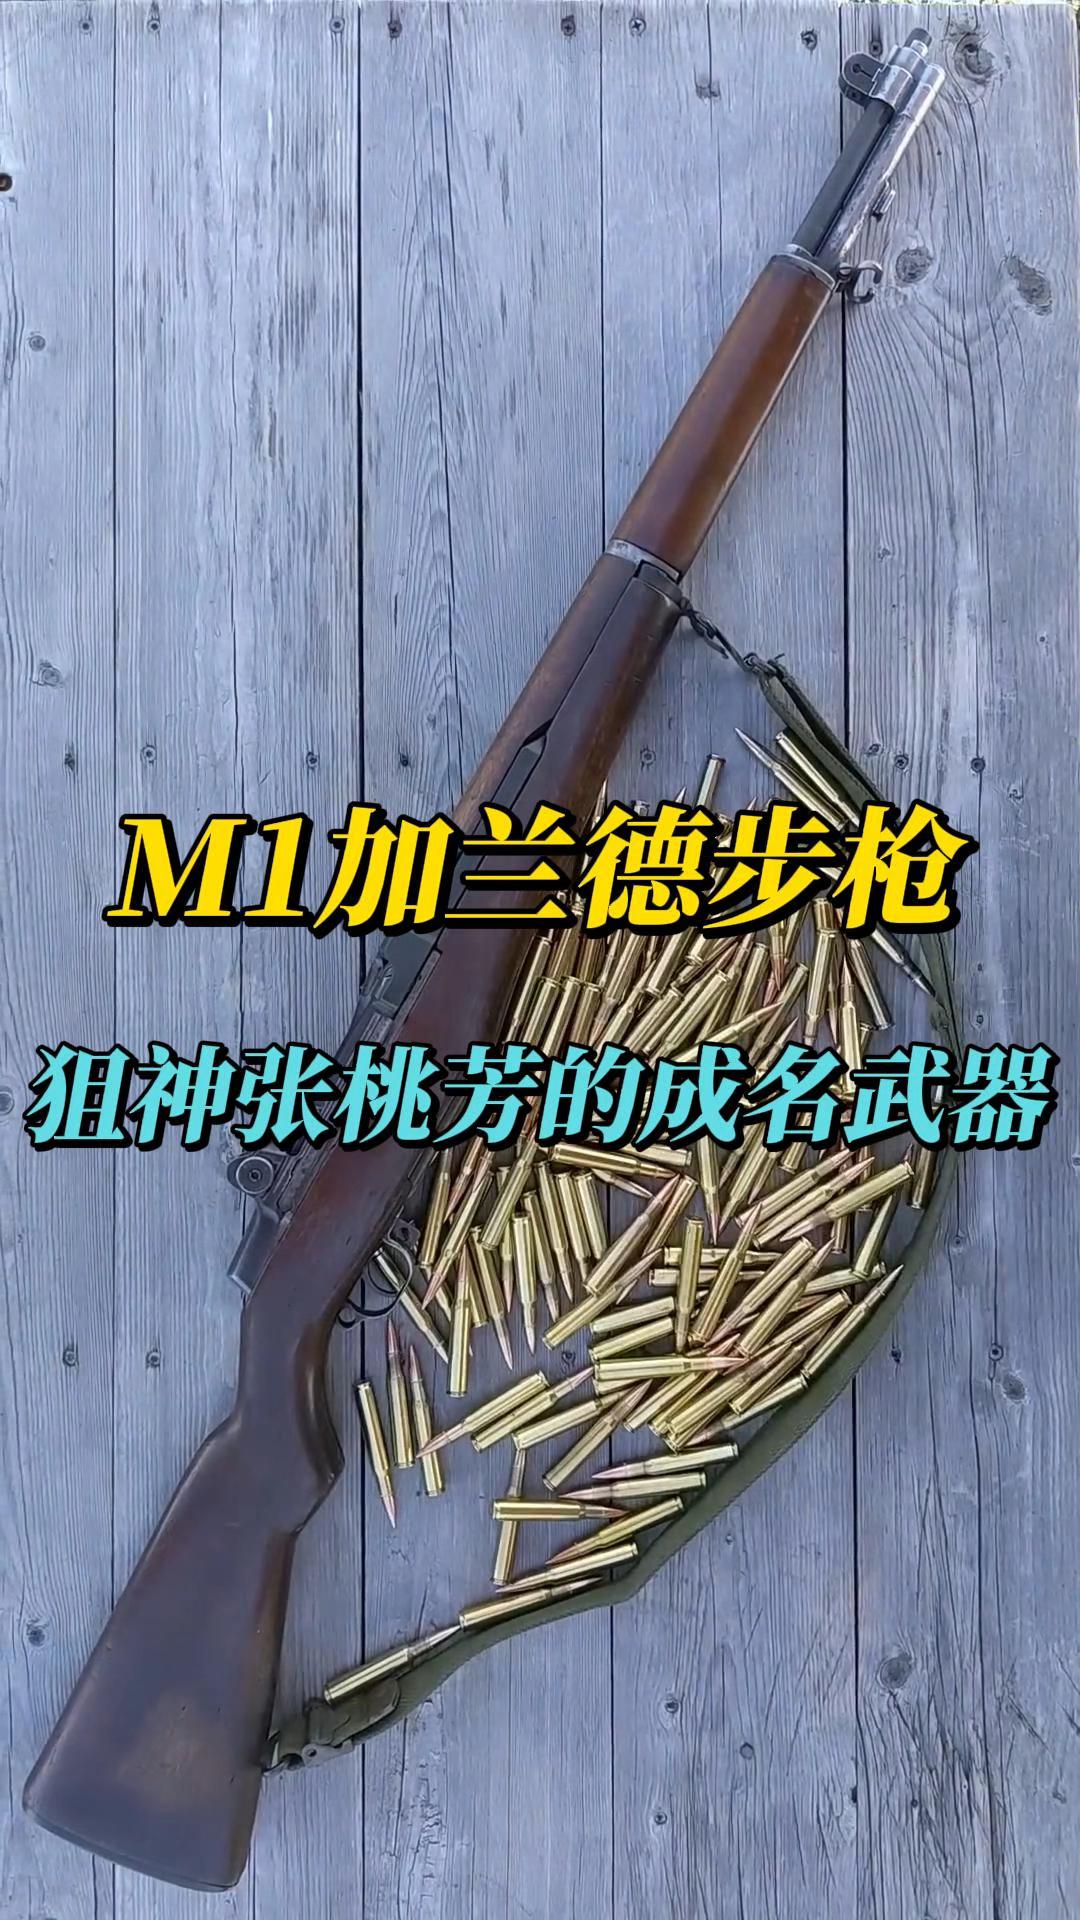 m1加兰德步枪,狙神张桃芳最爱的武器